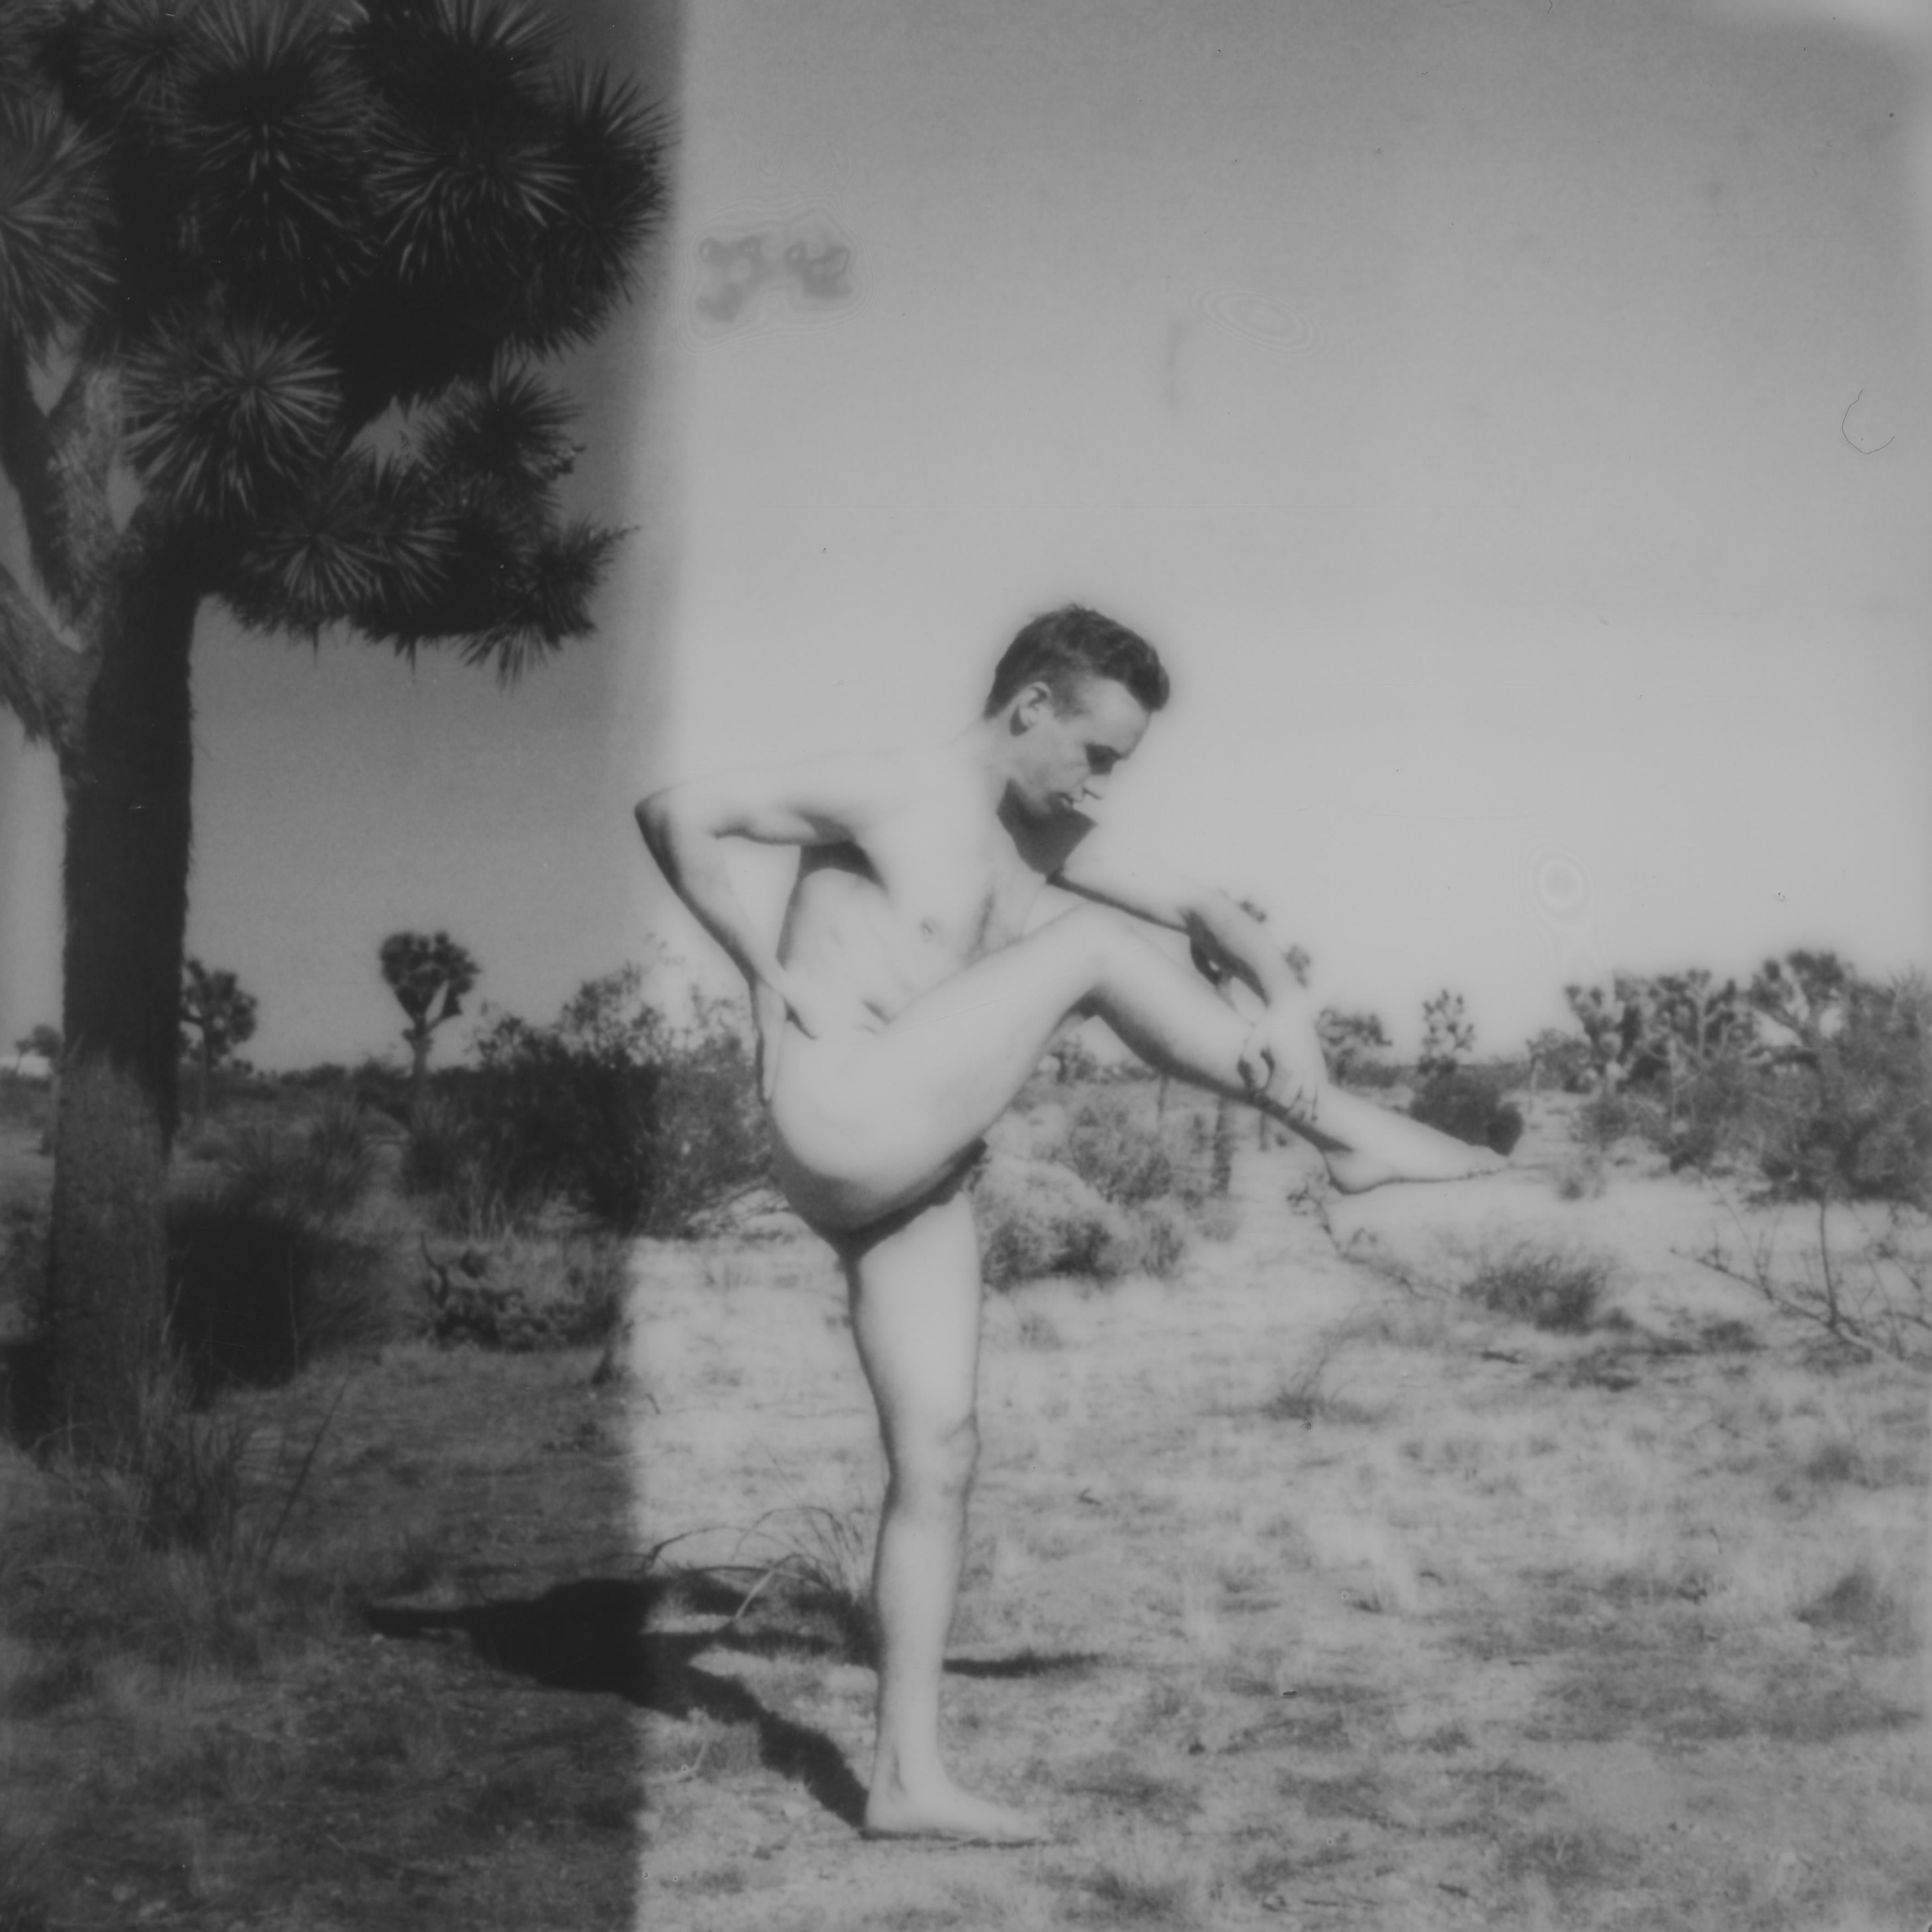 Kirsten Thys van den Audenaerde Portrait Photograph – Balancing act in Schwarz-Weiß - Zeitgenössisch, Polaroid, Nude, 21. Jahrhundert